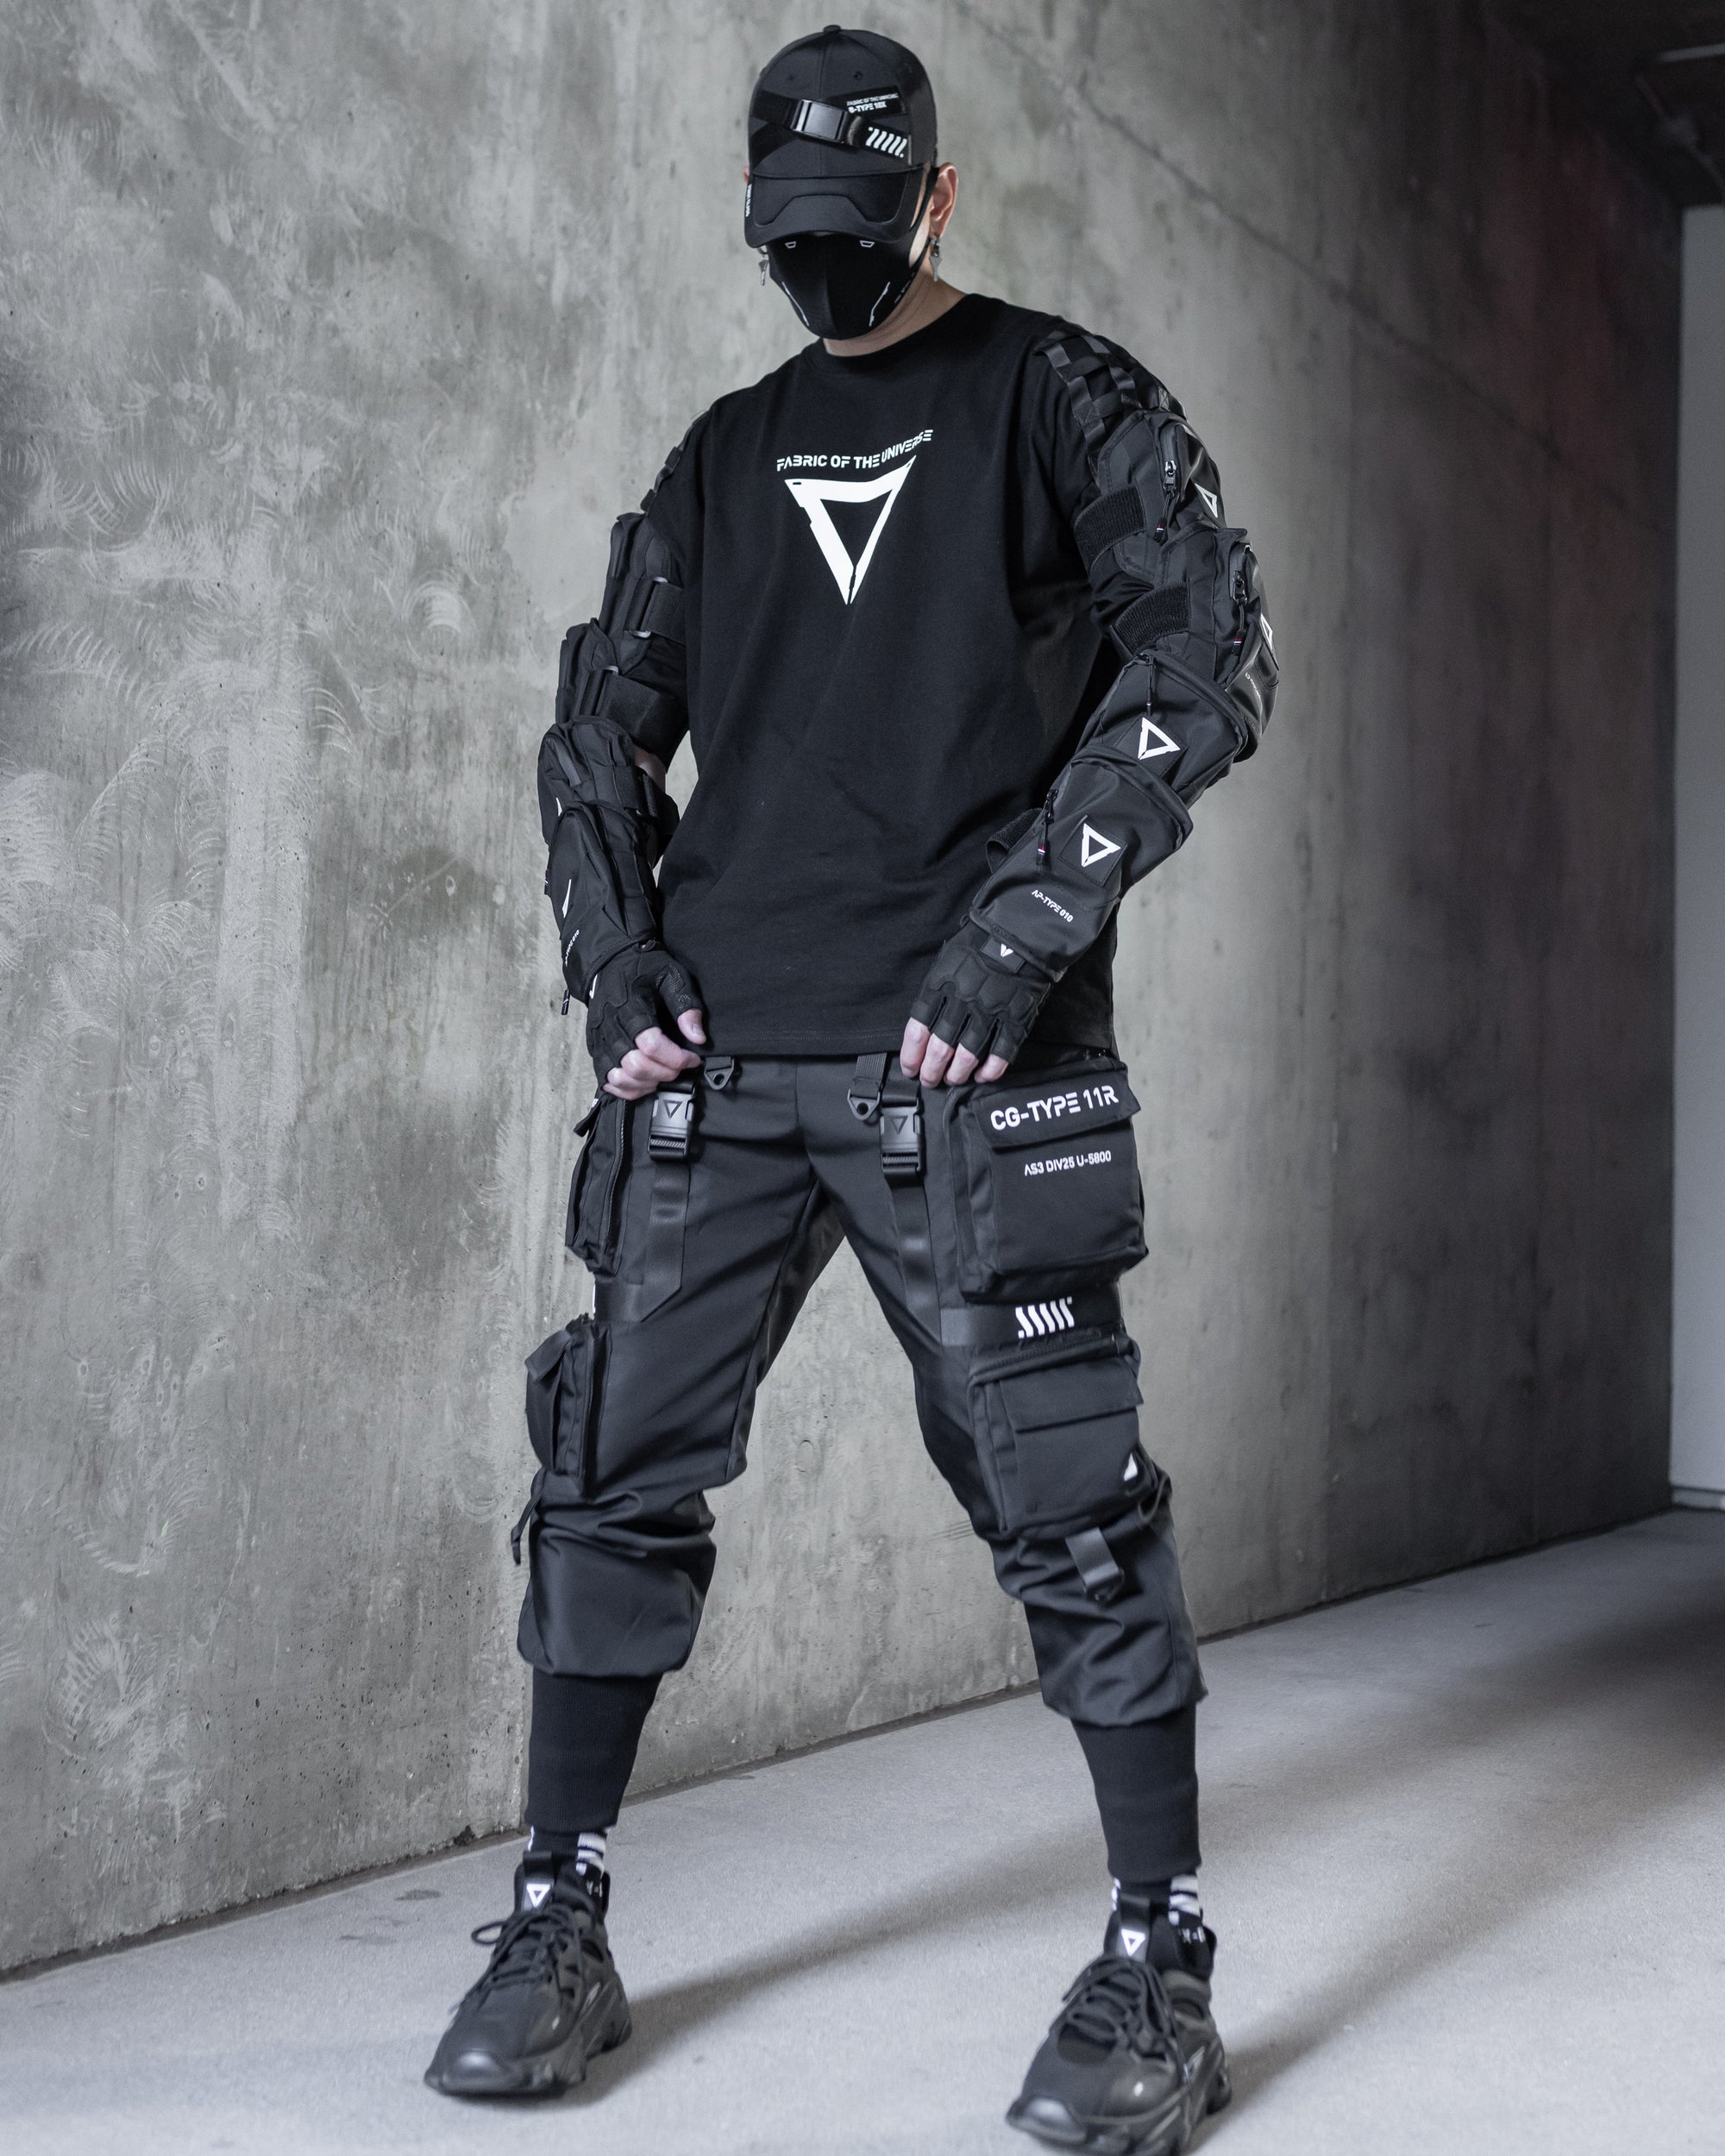 Futuristic Techwear Accessories | Cyberpunk Accessories - Fabric of the ...